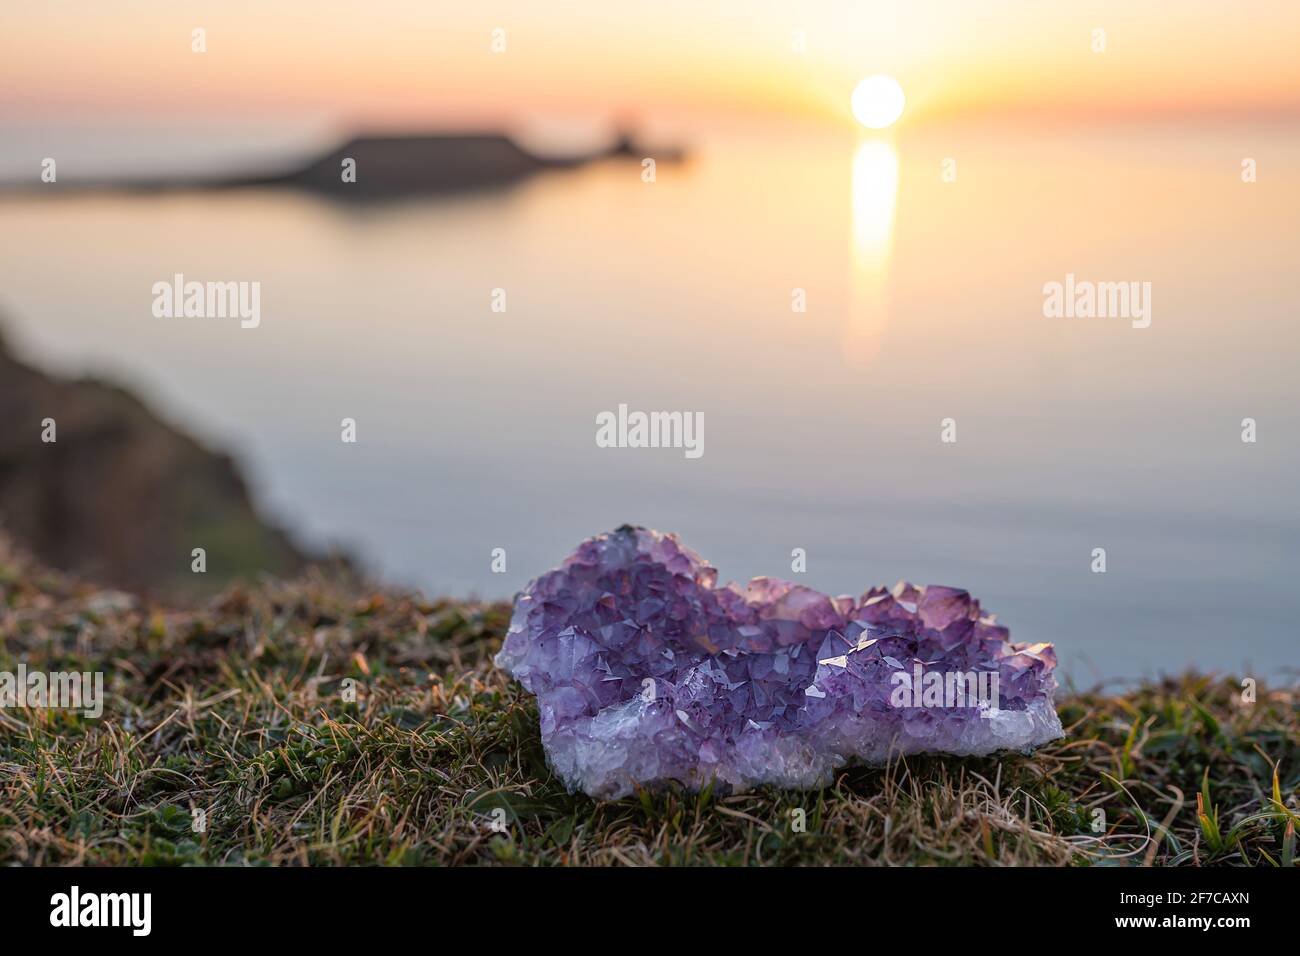 Cristallo di ametista immagini e fotografie stock ad alta risoluzione -  Alamy